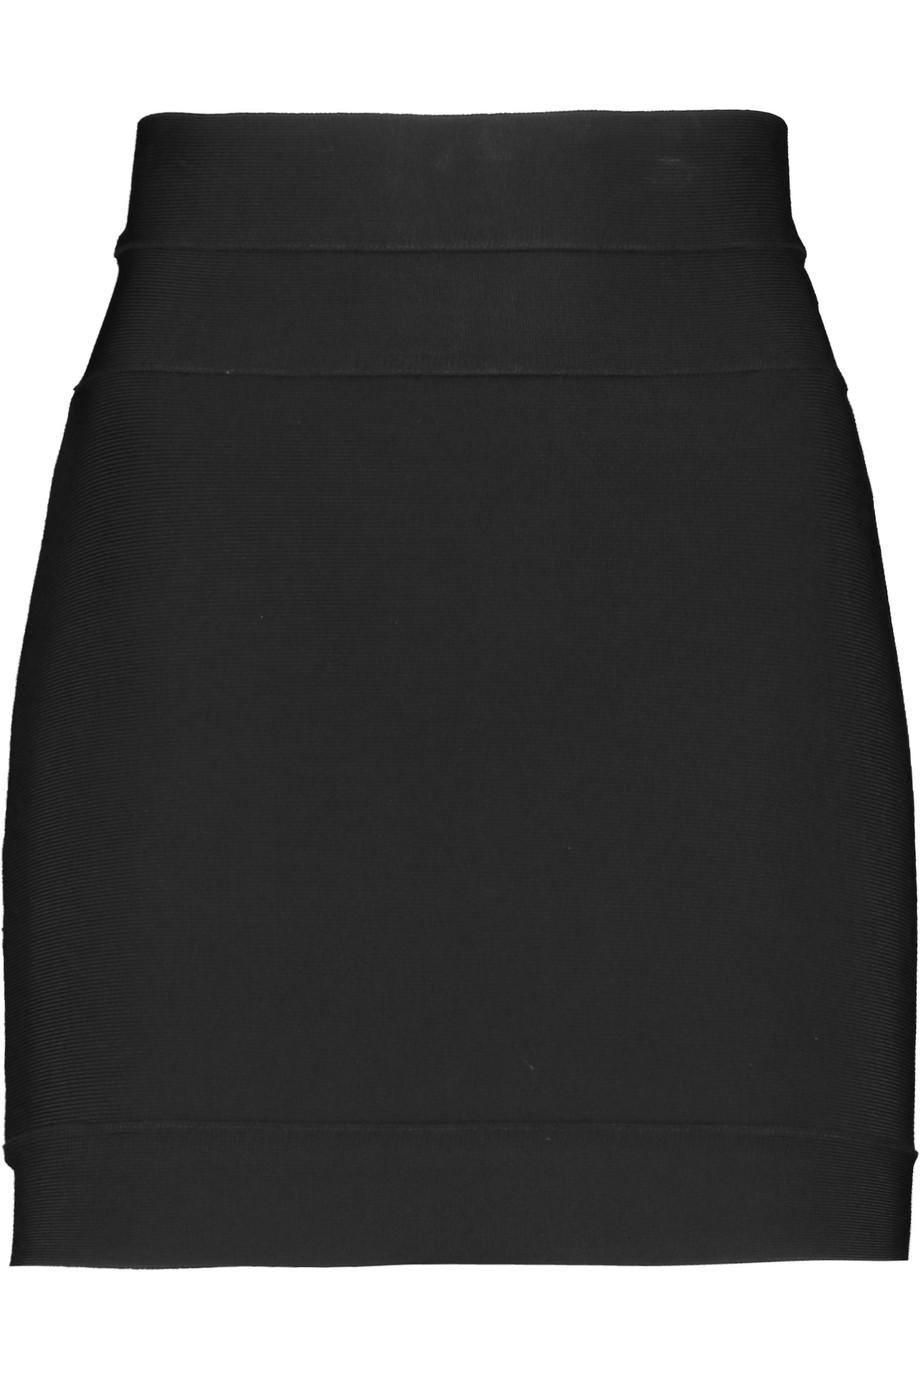 Herve Leger Bandage Mini Skirt | ModeSens